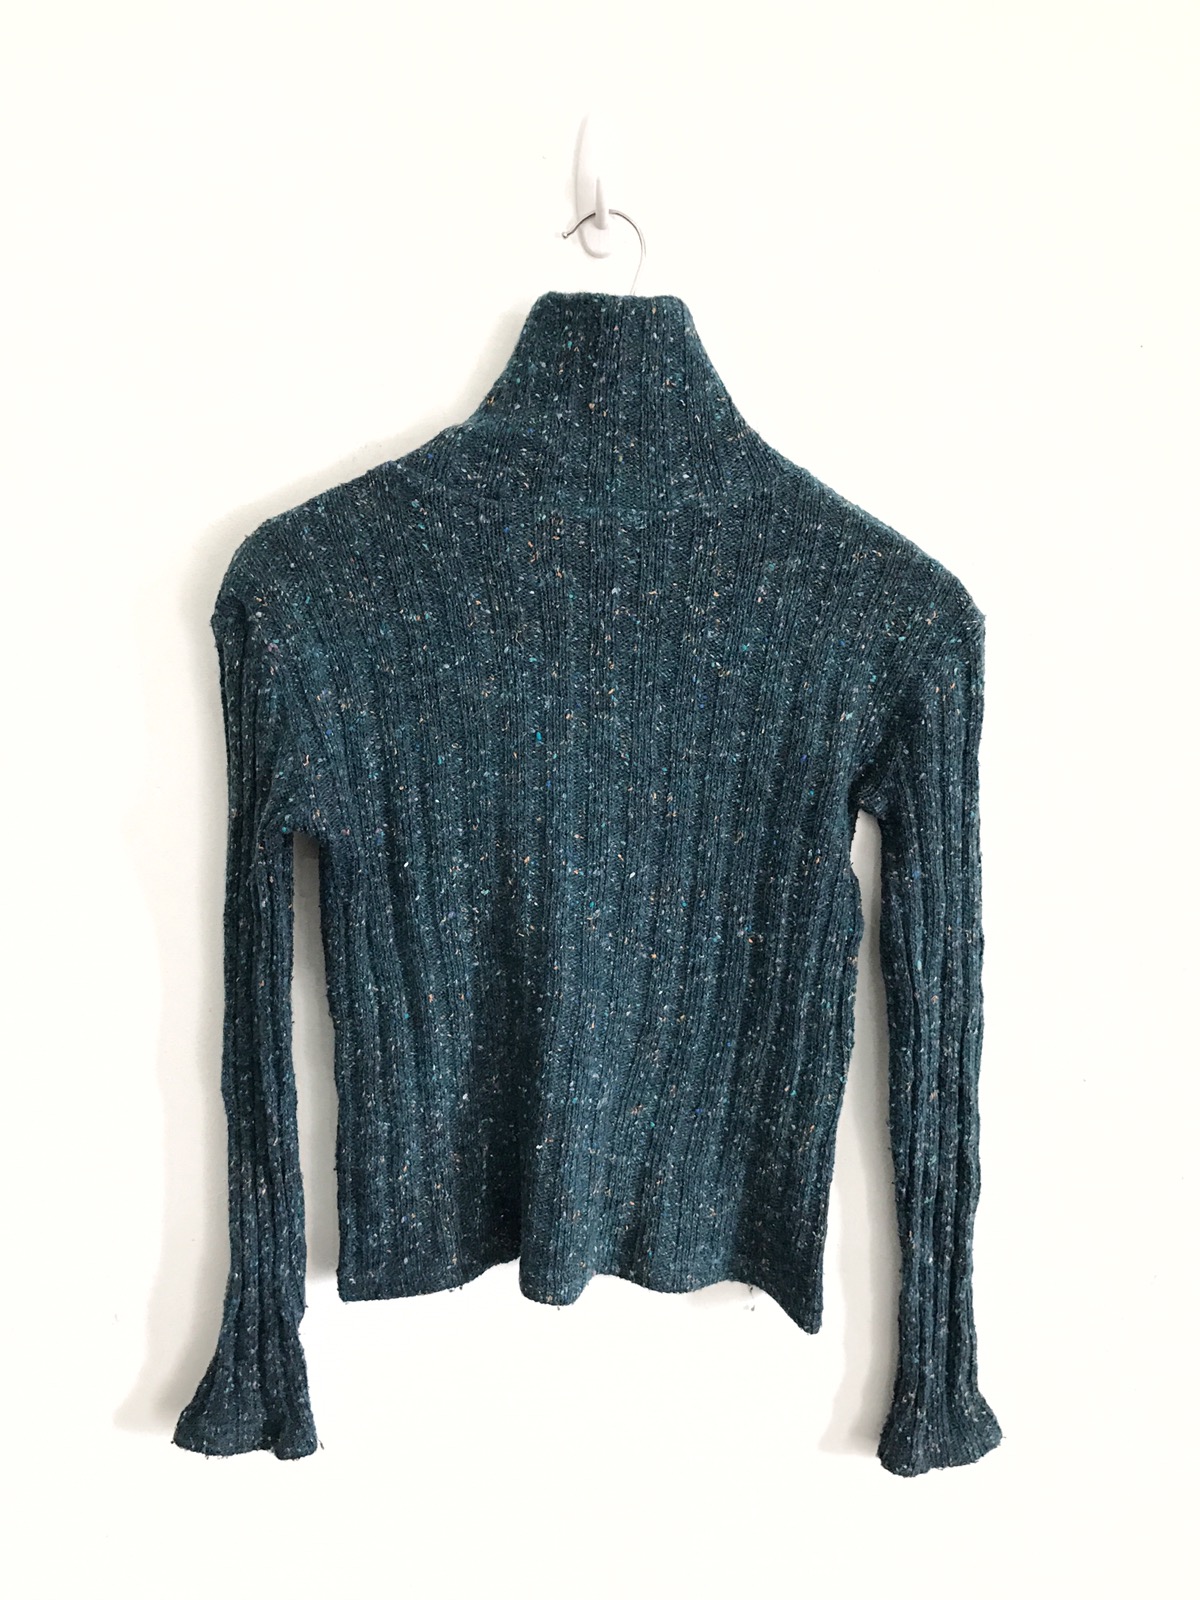 Hand Knit Sweater Jumper Armpit 16"x24" - 3